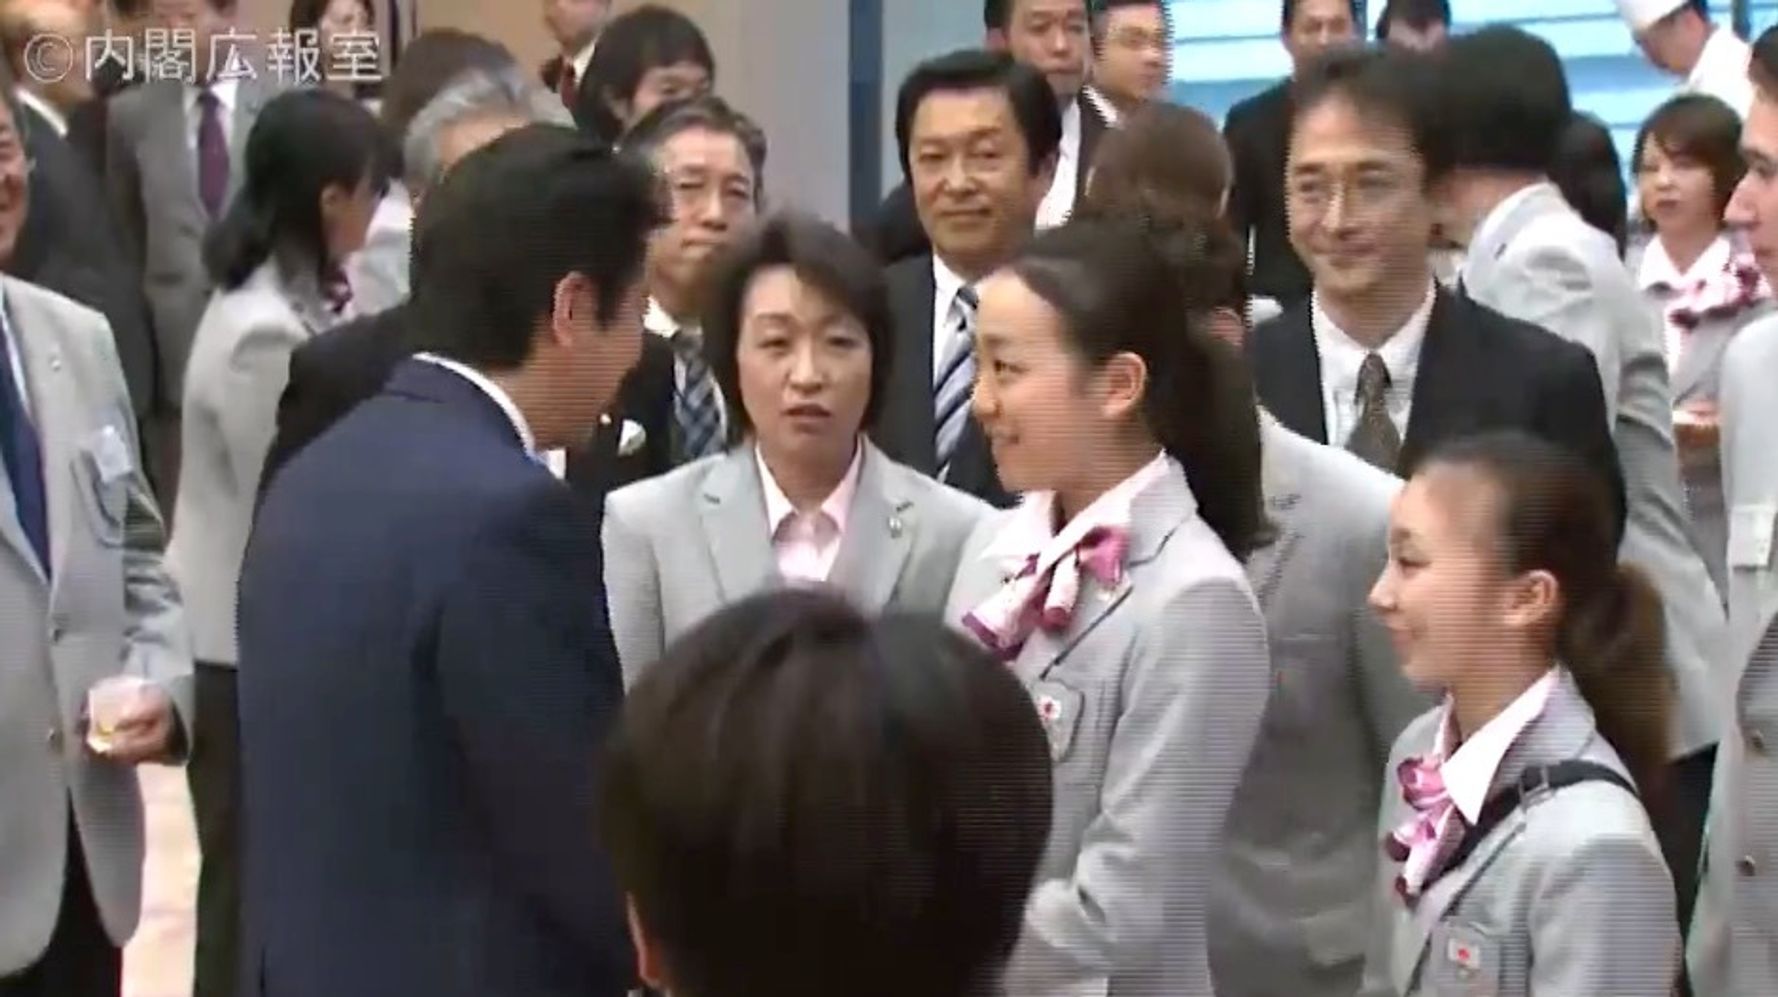 橋本聖子氏が 浅田真央選手に安倍首相とのハグ強要 と報道されたシーン 政府の動画に残っていた ハフポスト